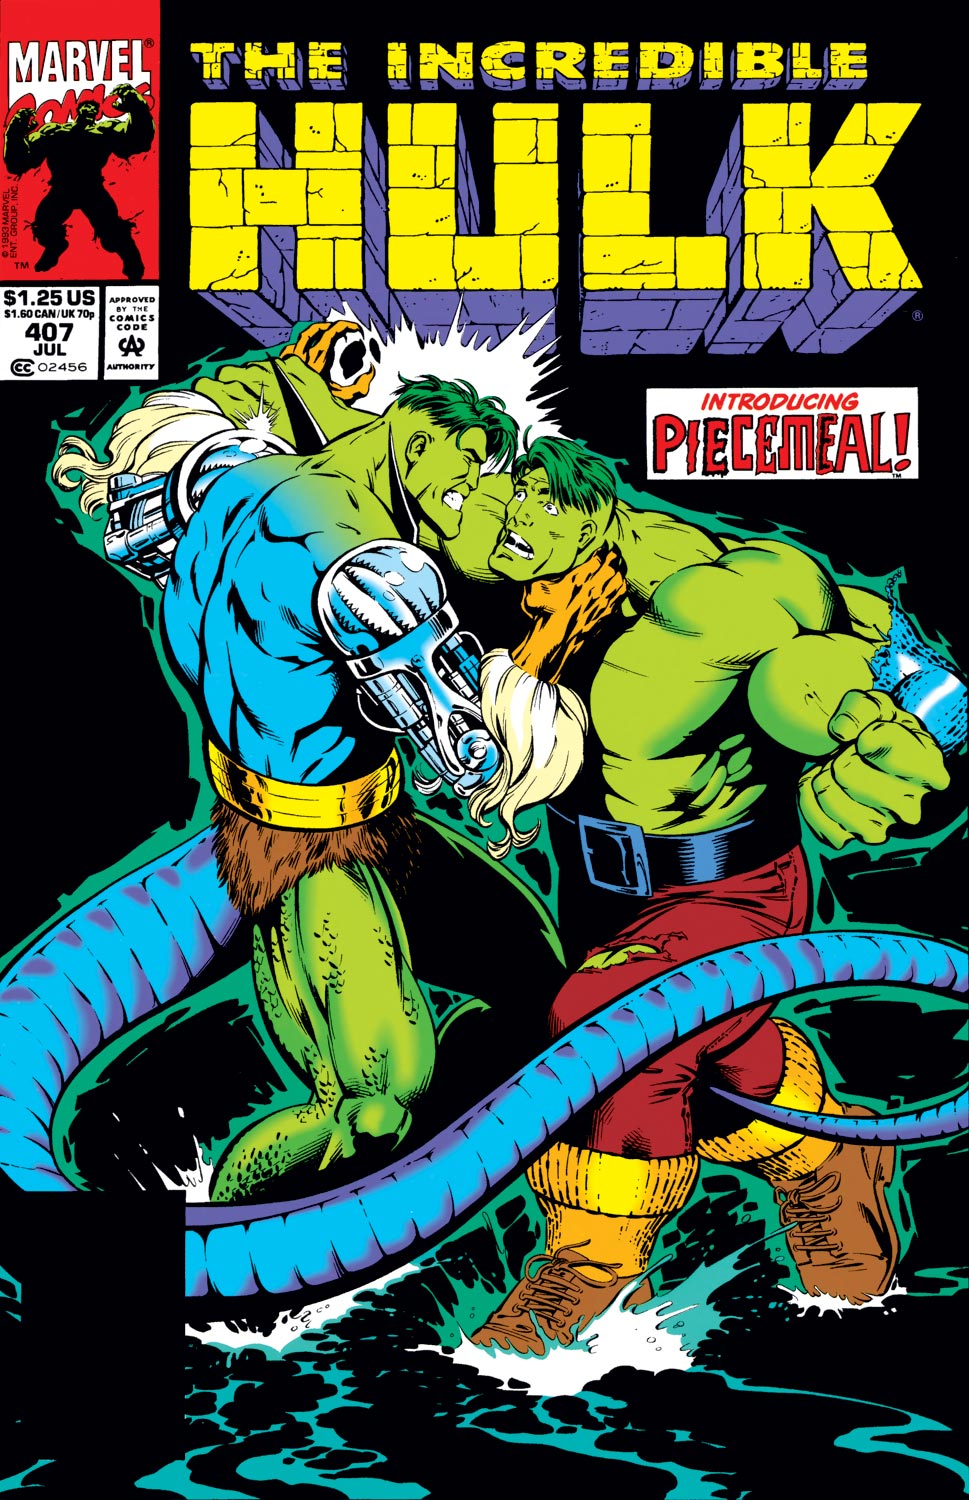 Incredible Hulk (1962) #407